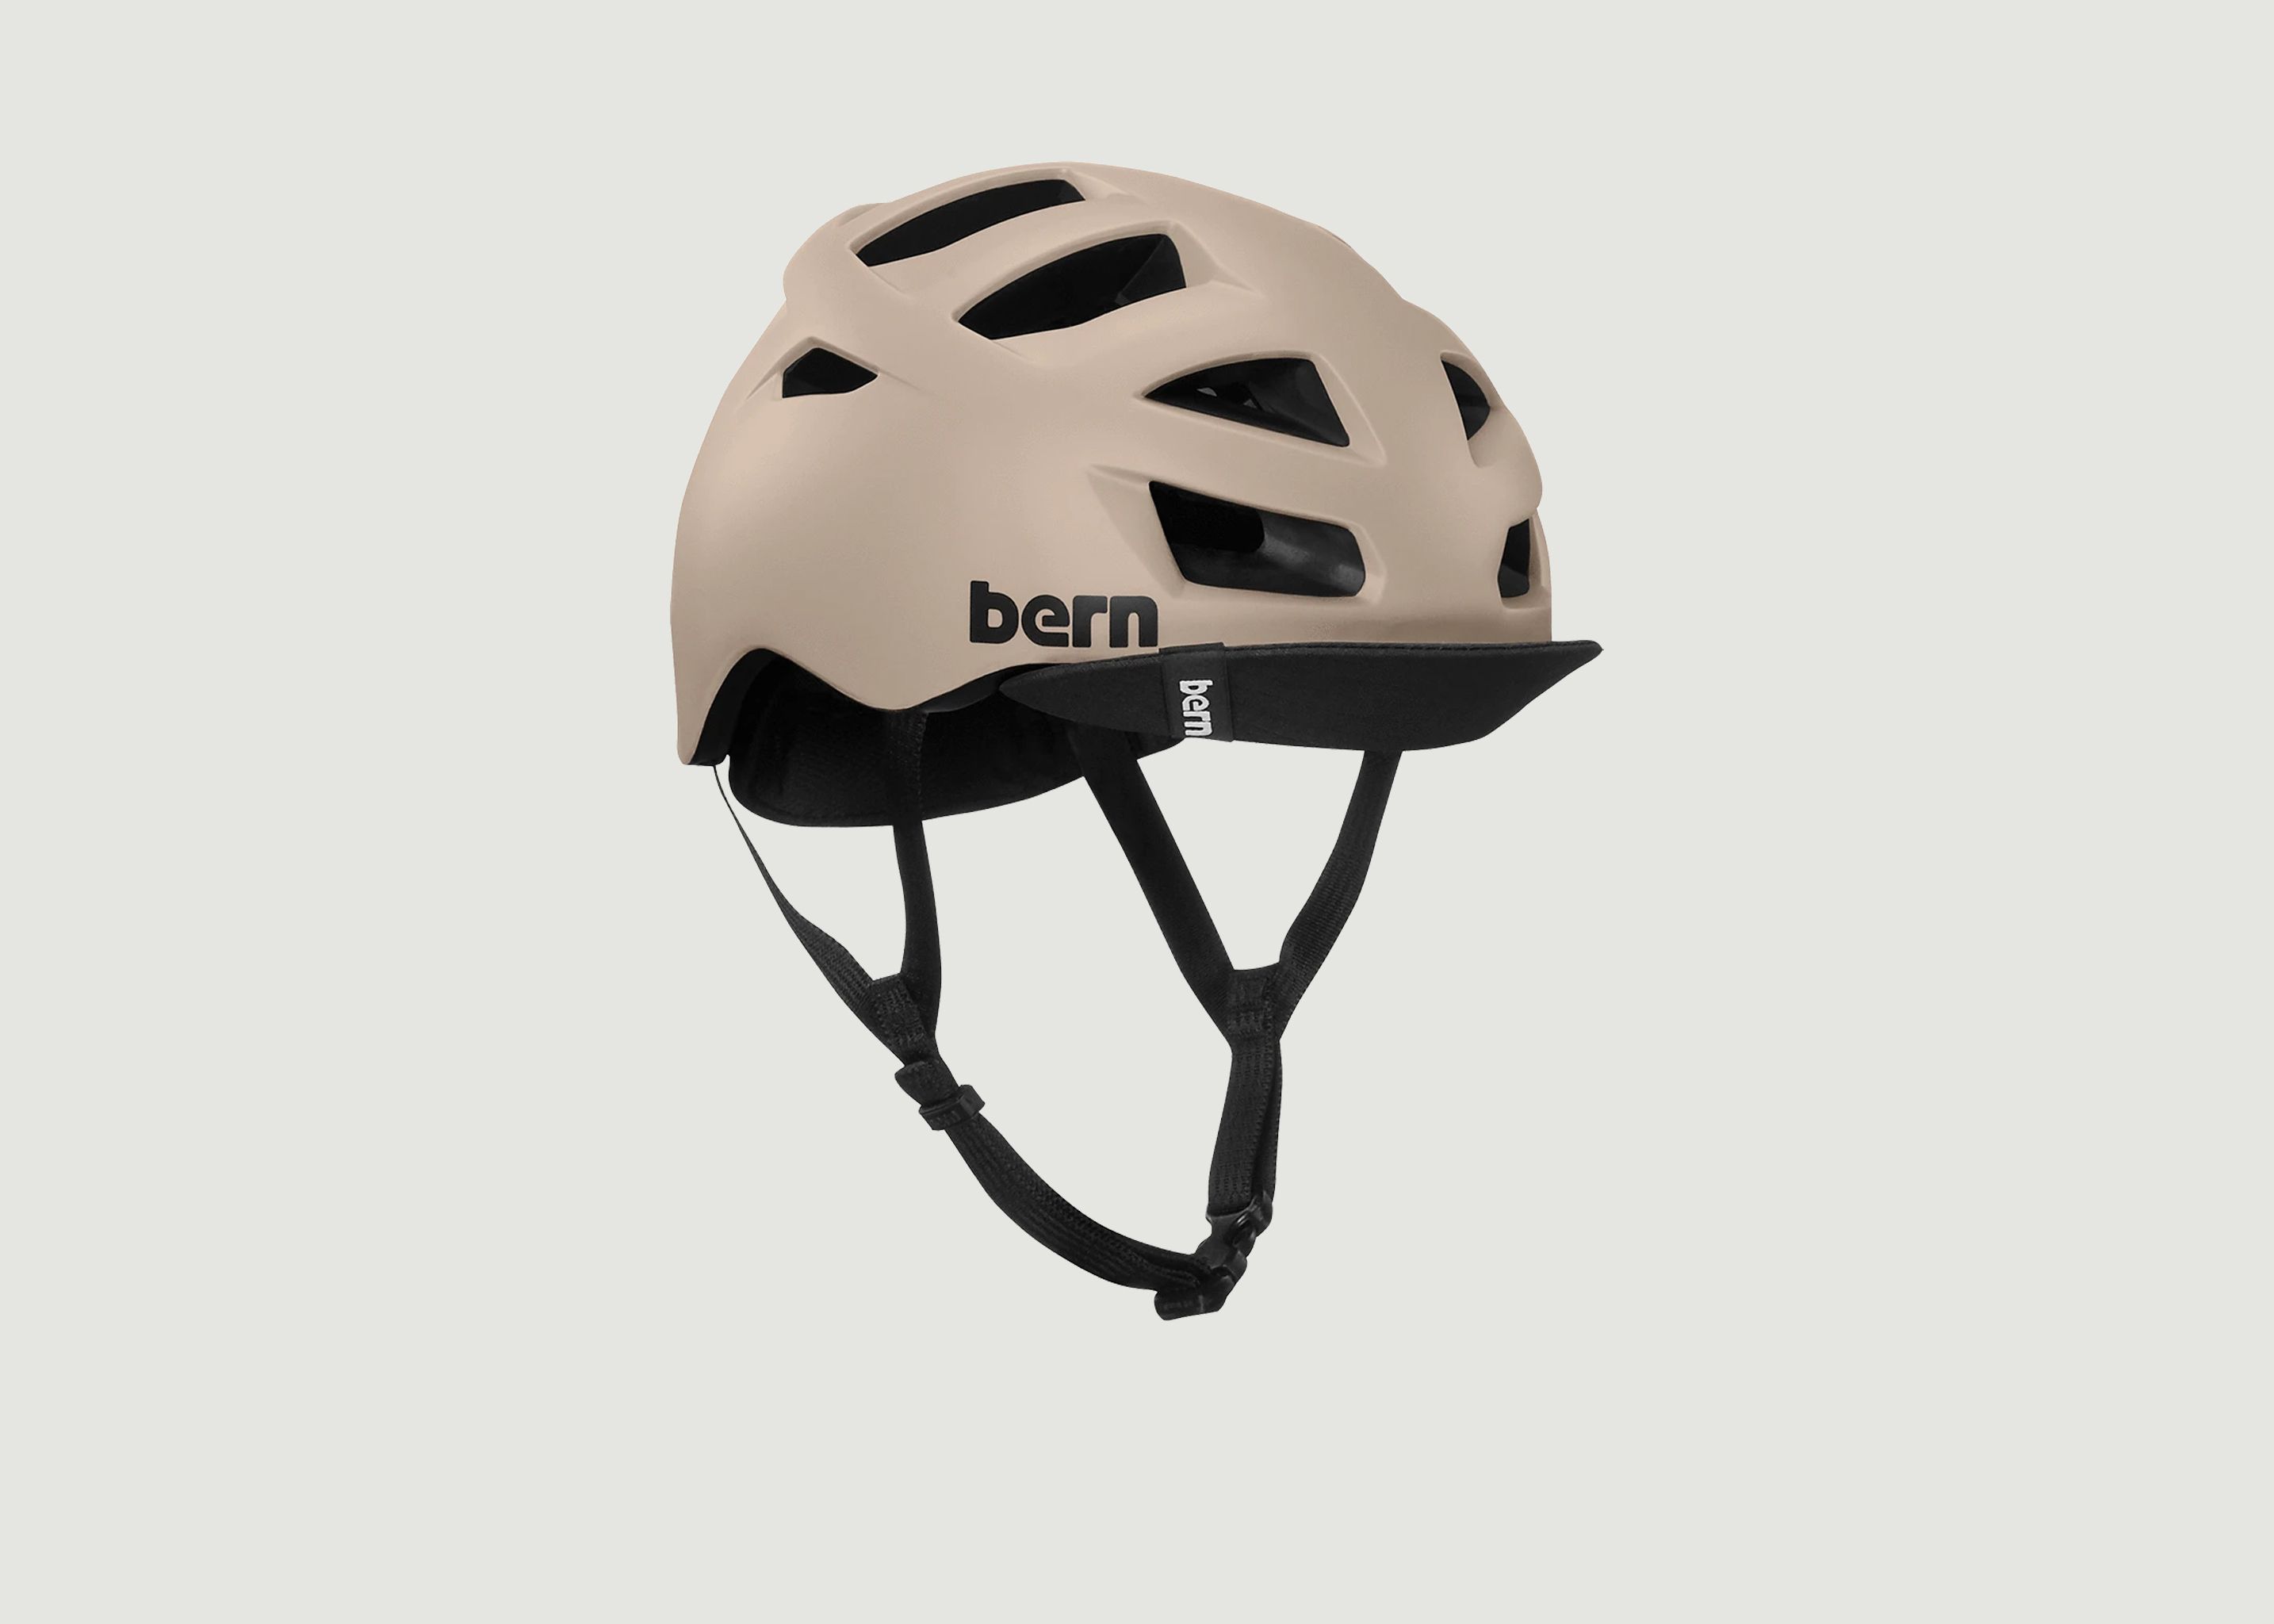 bern bike helmets